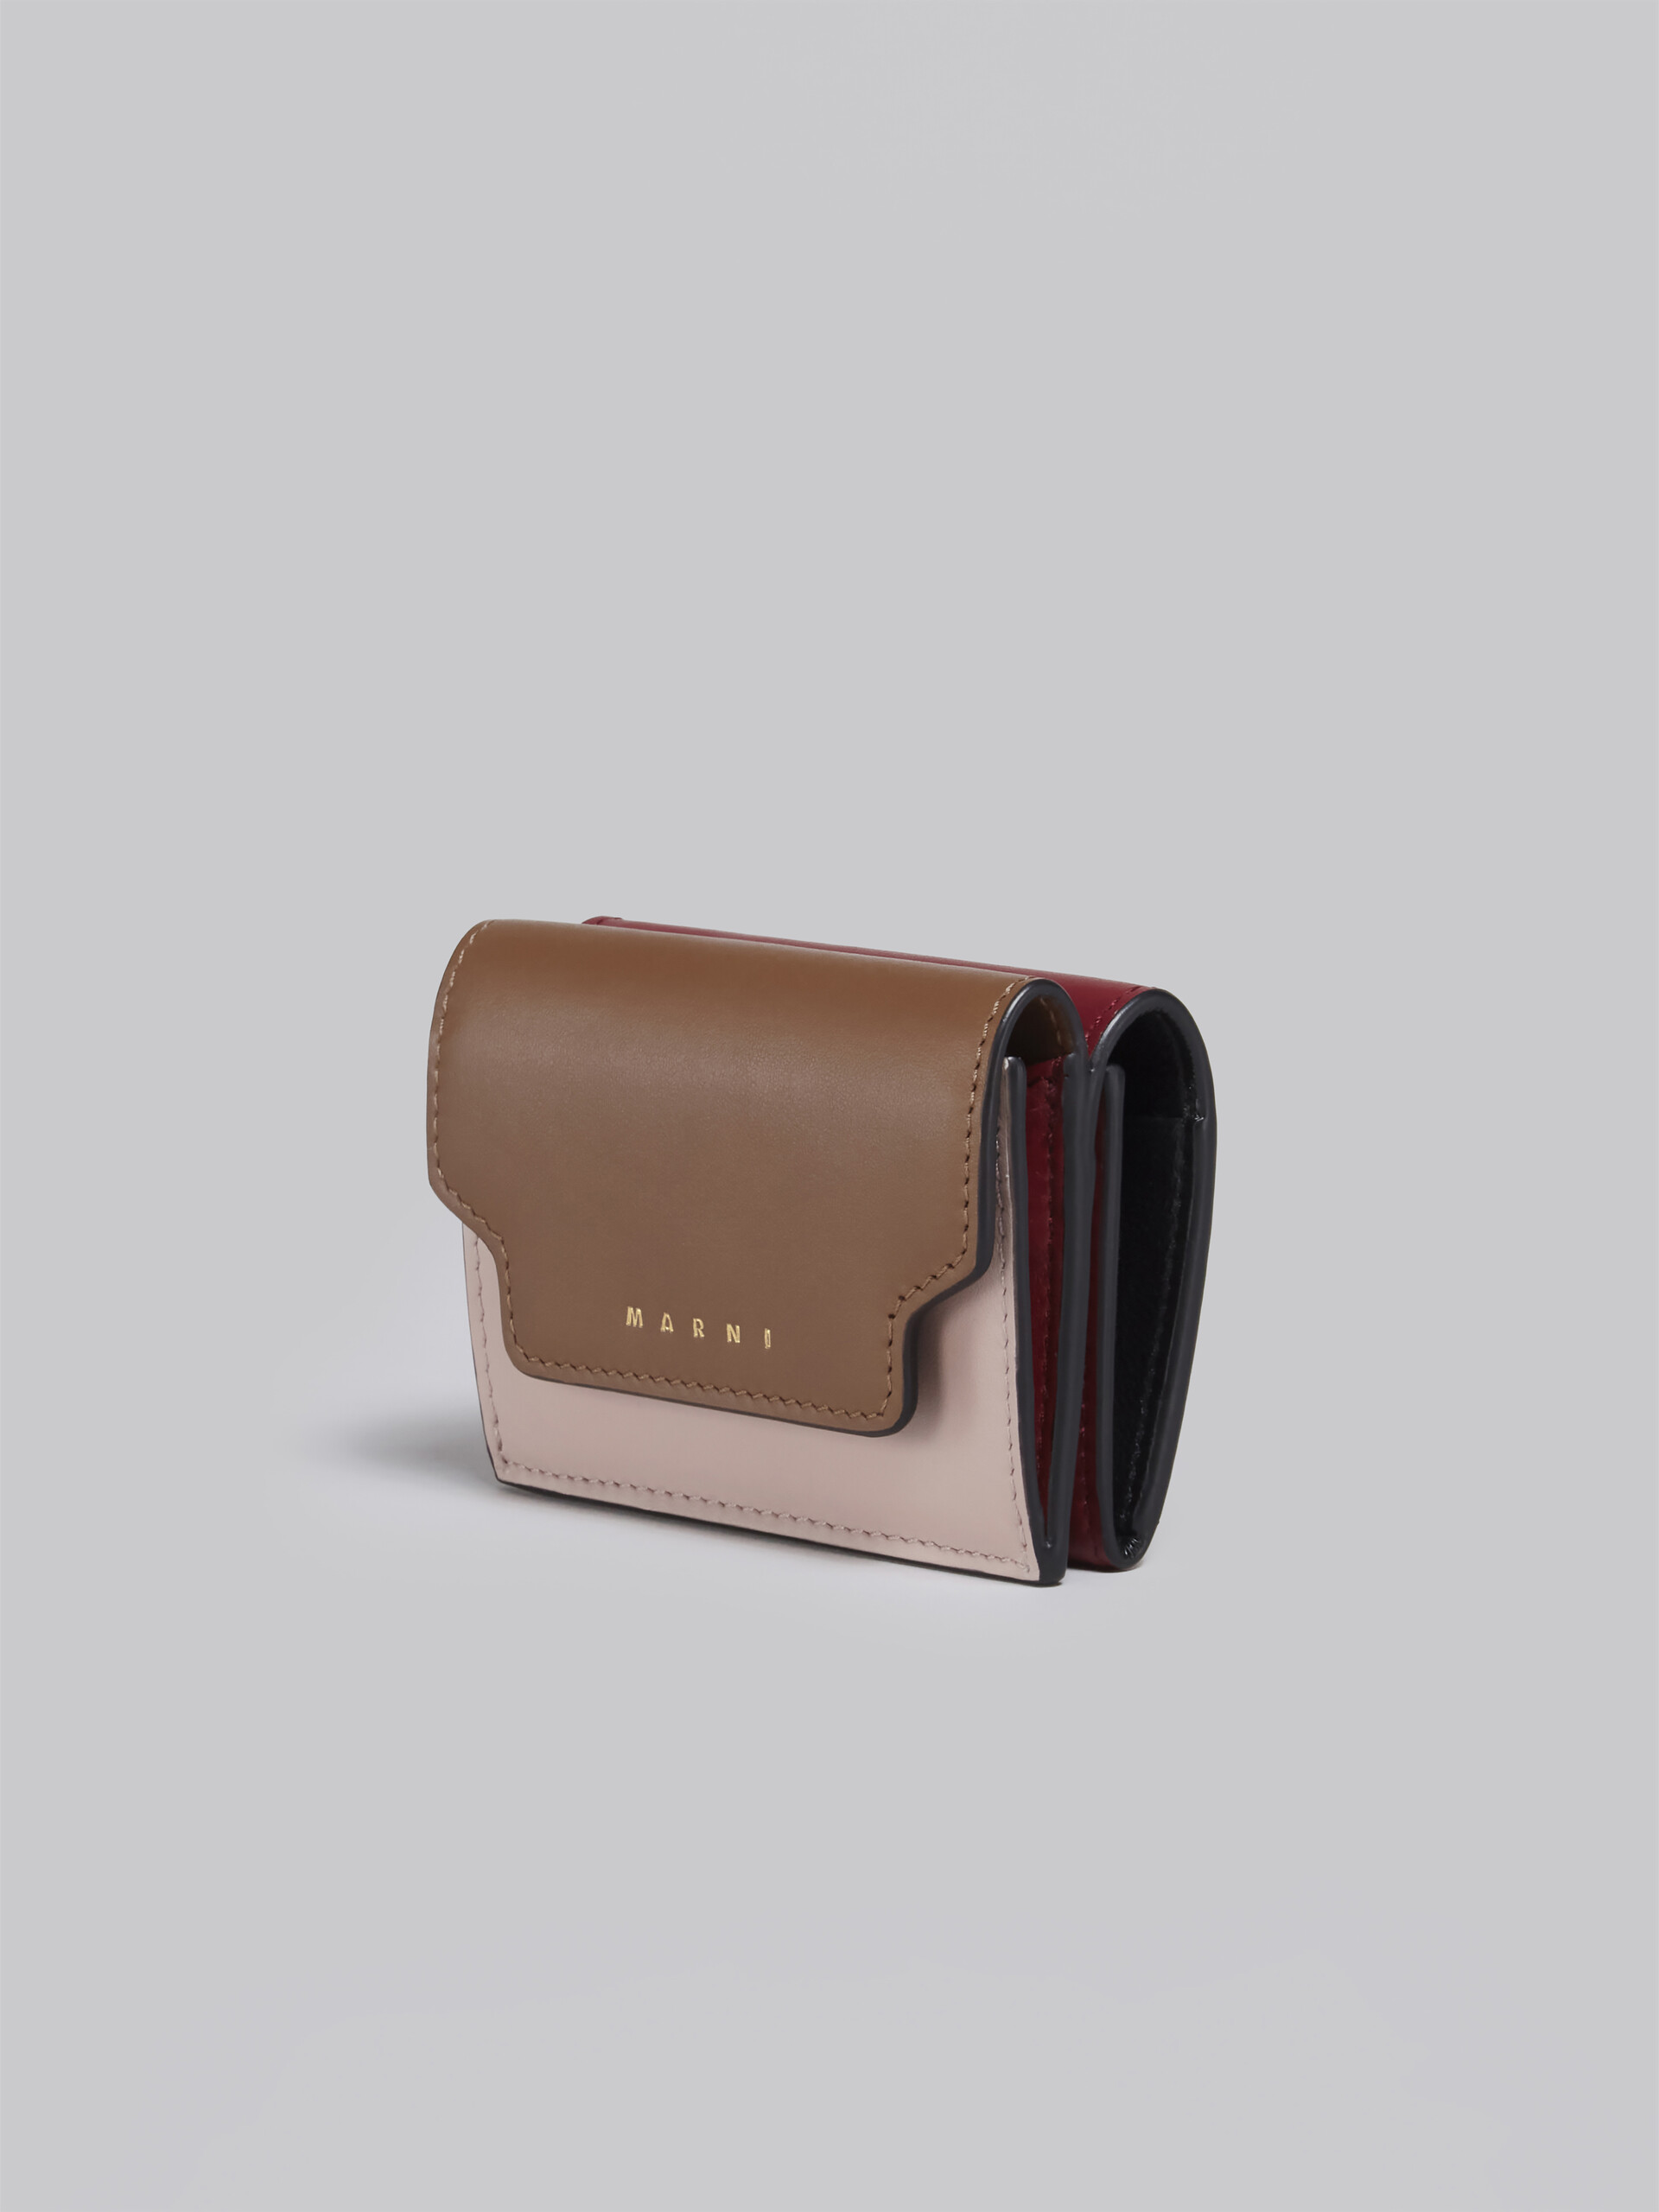 Dreifach faltbare Brieftasche aus braun-pinkem und burgunderrotem Leder - Brieftaschen - Image 4